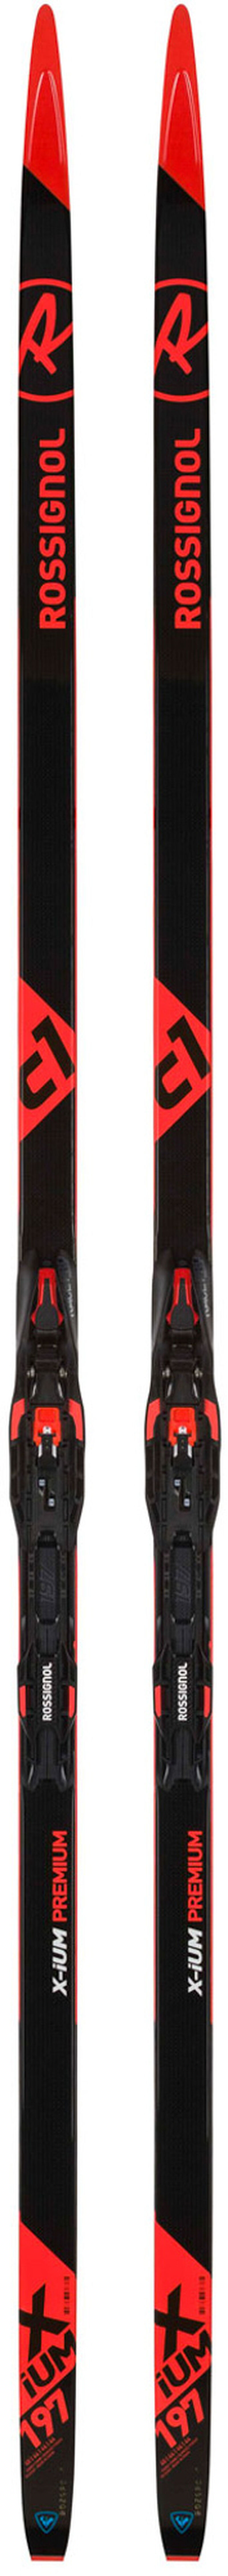 Unisex Nordic Racing Skis X-Ium Classic Premium C1